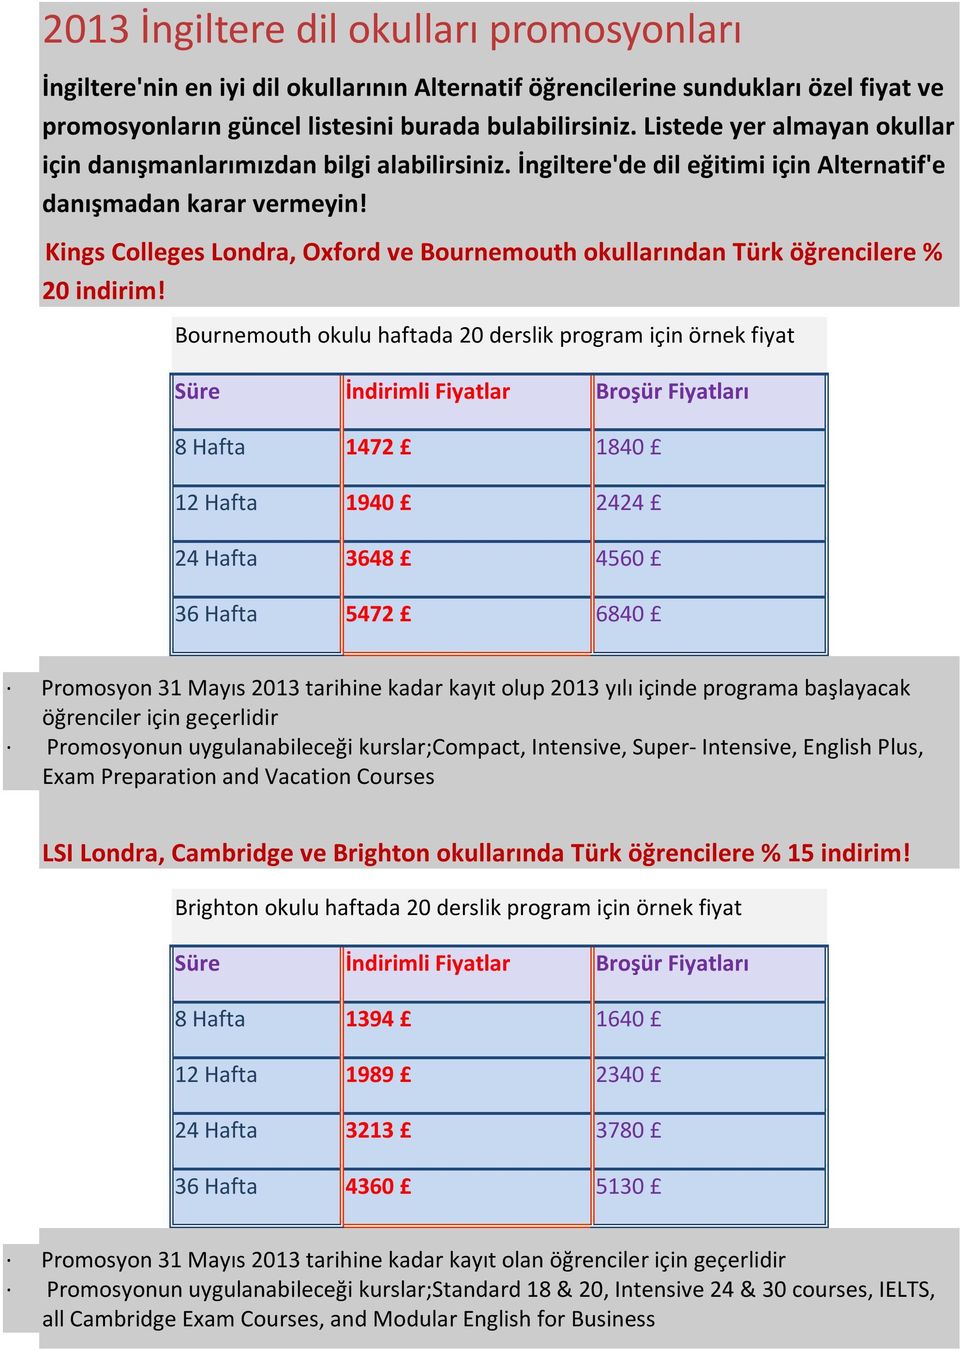 Kings Colleges Londra, Oxford ve Bournemouth okullarından Türk öğrencilere % 20 indirim!